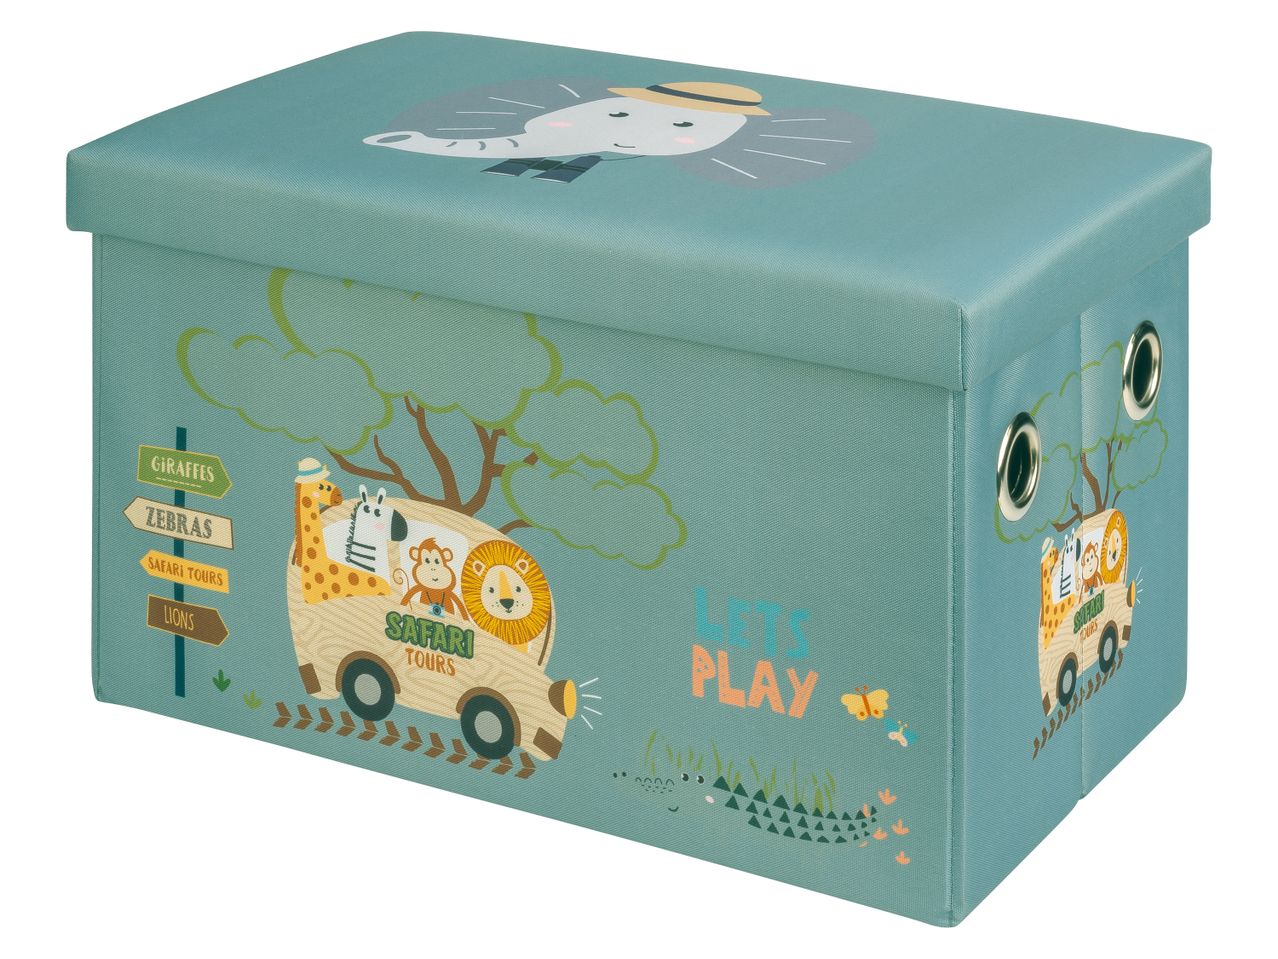 Box cassapanca per bambini , prezzo 12.99 EUR 
Box cassapanca per bambini 
- Dimensioni: ...